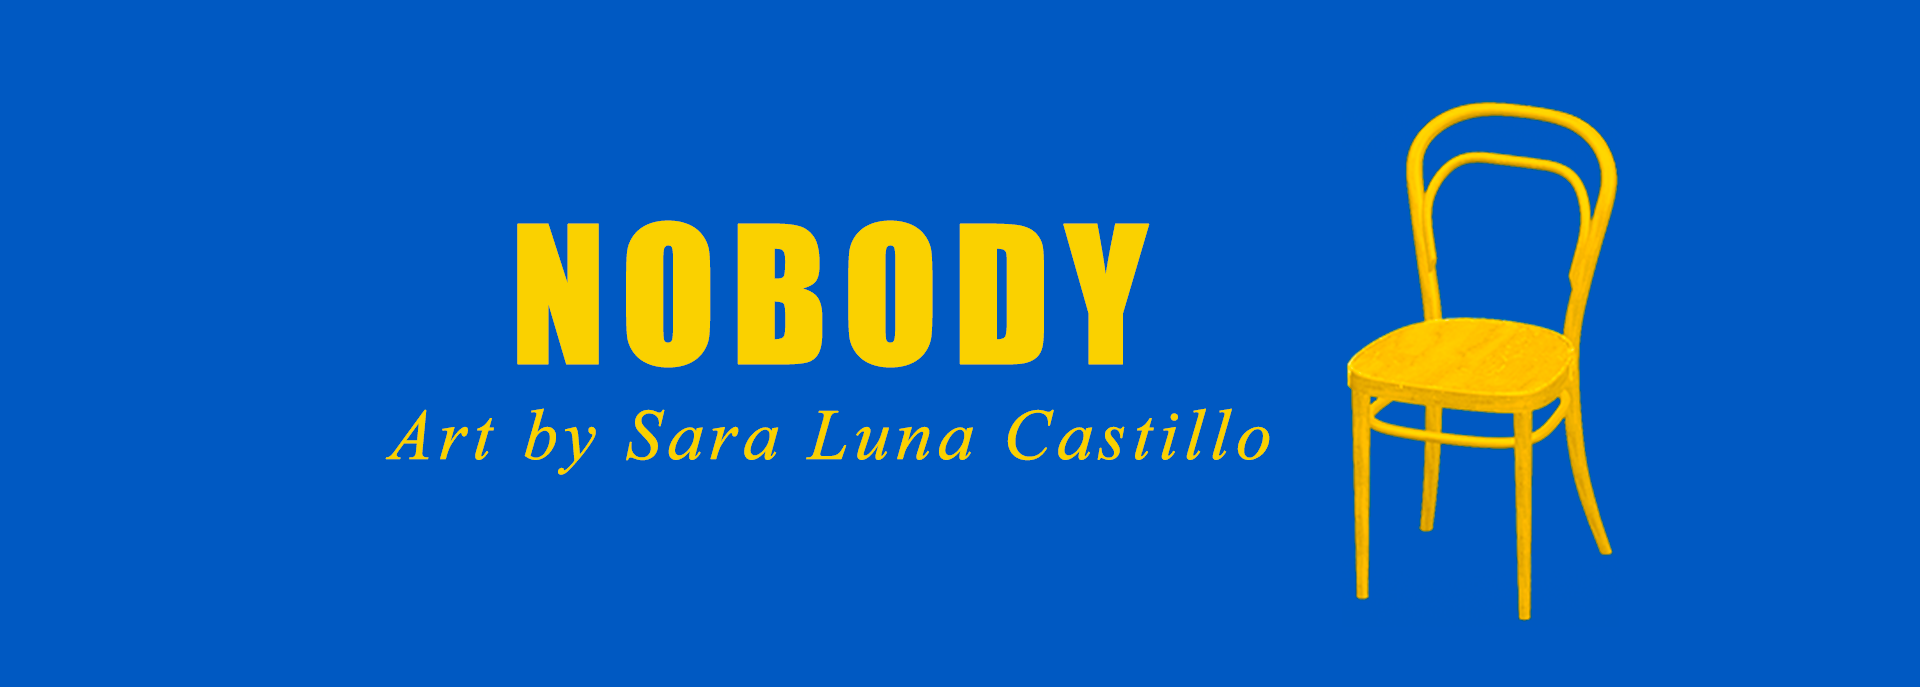 Interactive music: Nobody by Mitski